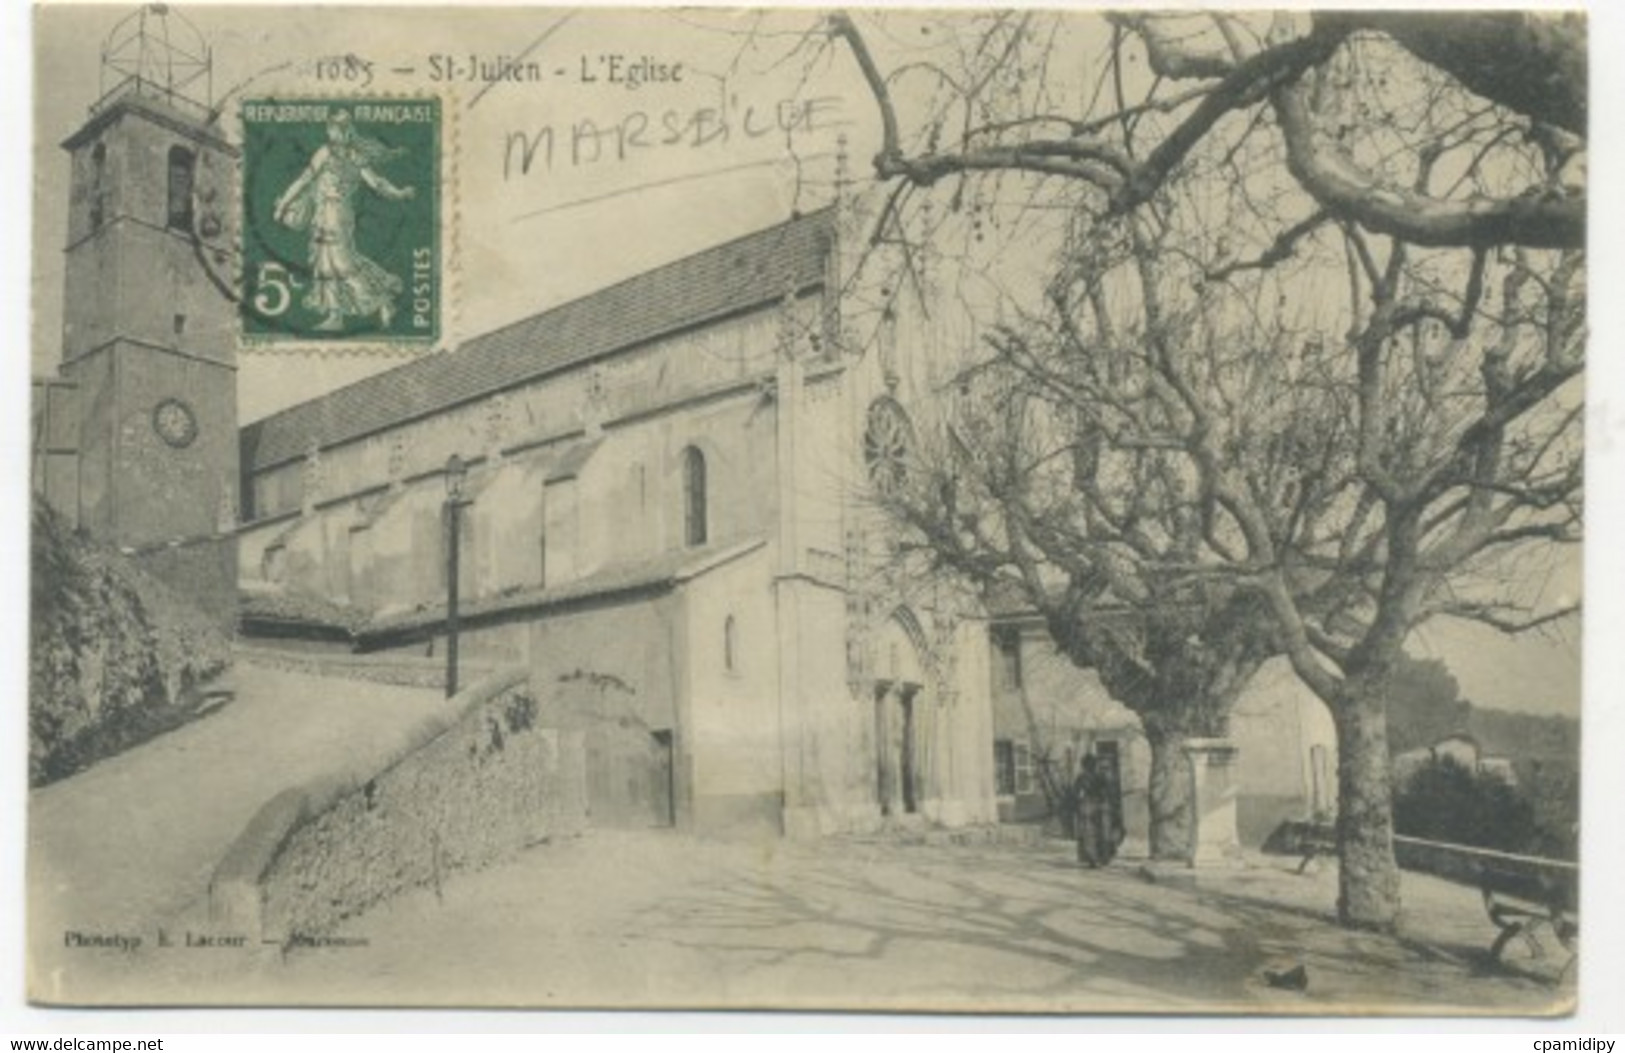 13/MARSEILLE - Saint-Julien - L'Eglise (Phototypie E. Lacour) - Saint Barnabé, Saint Julien, Montolivet